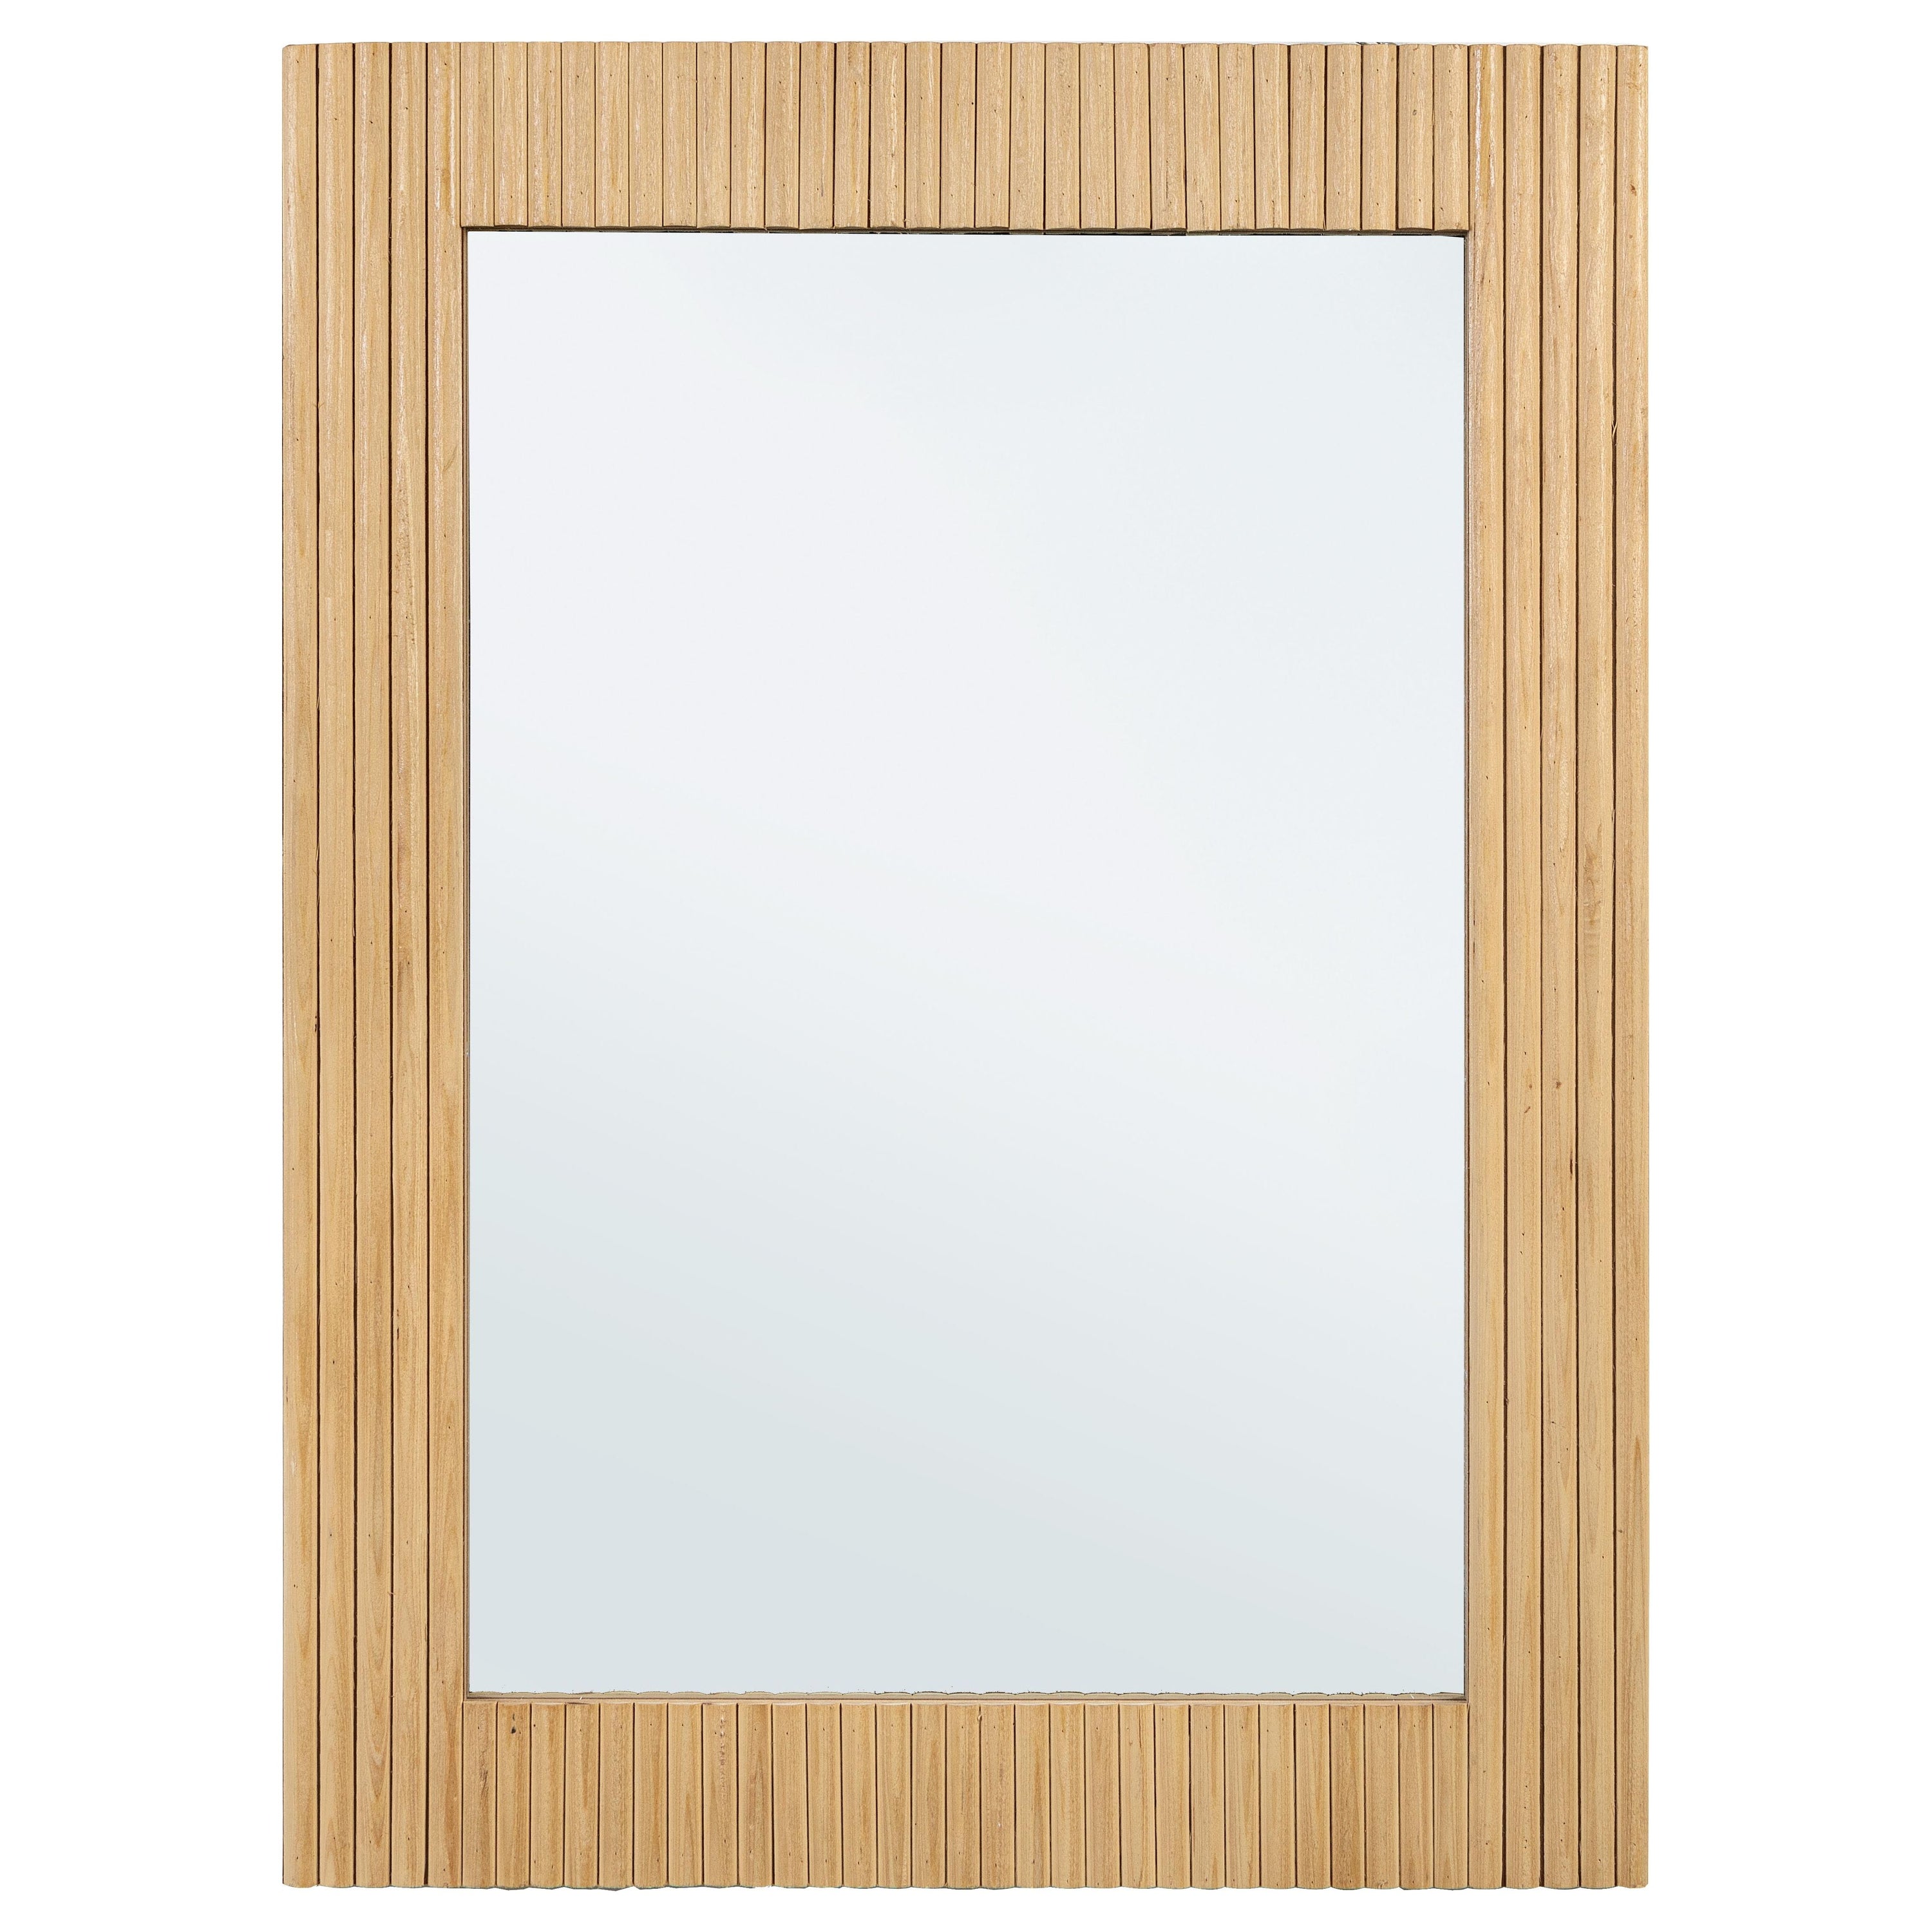 CHARLEY veidrodis, 60X80, medinis rėmas